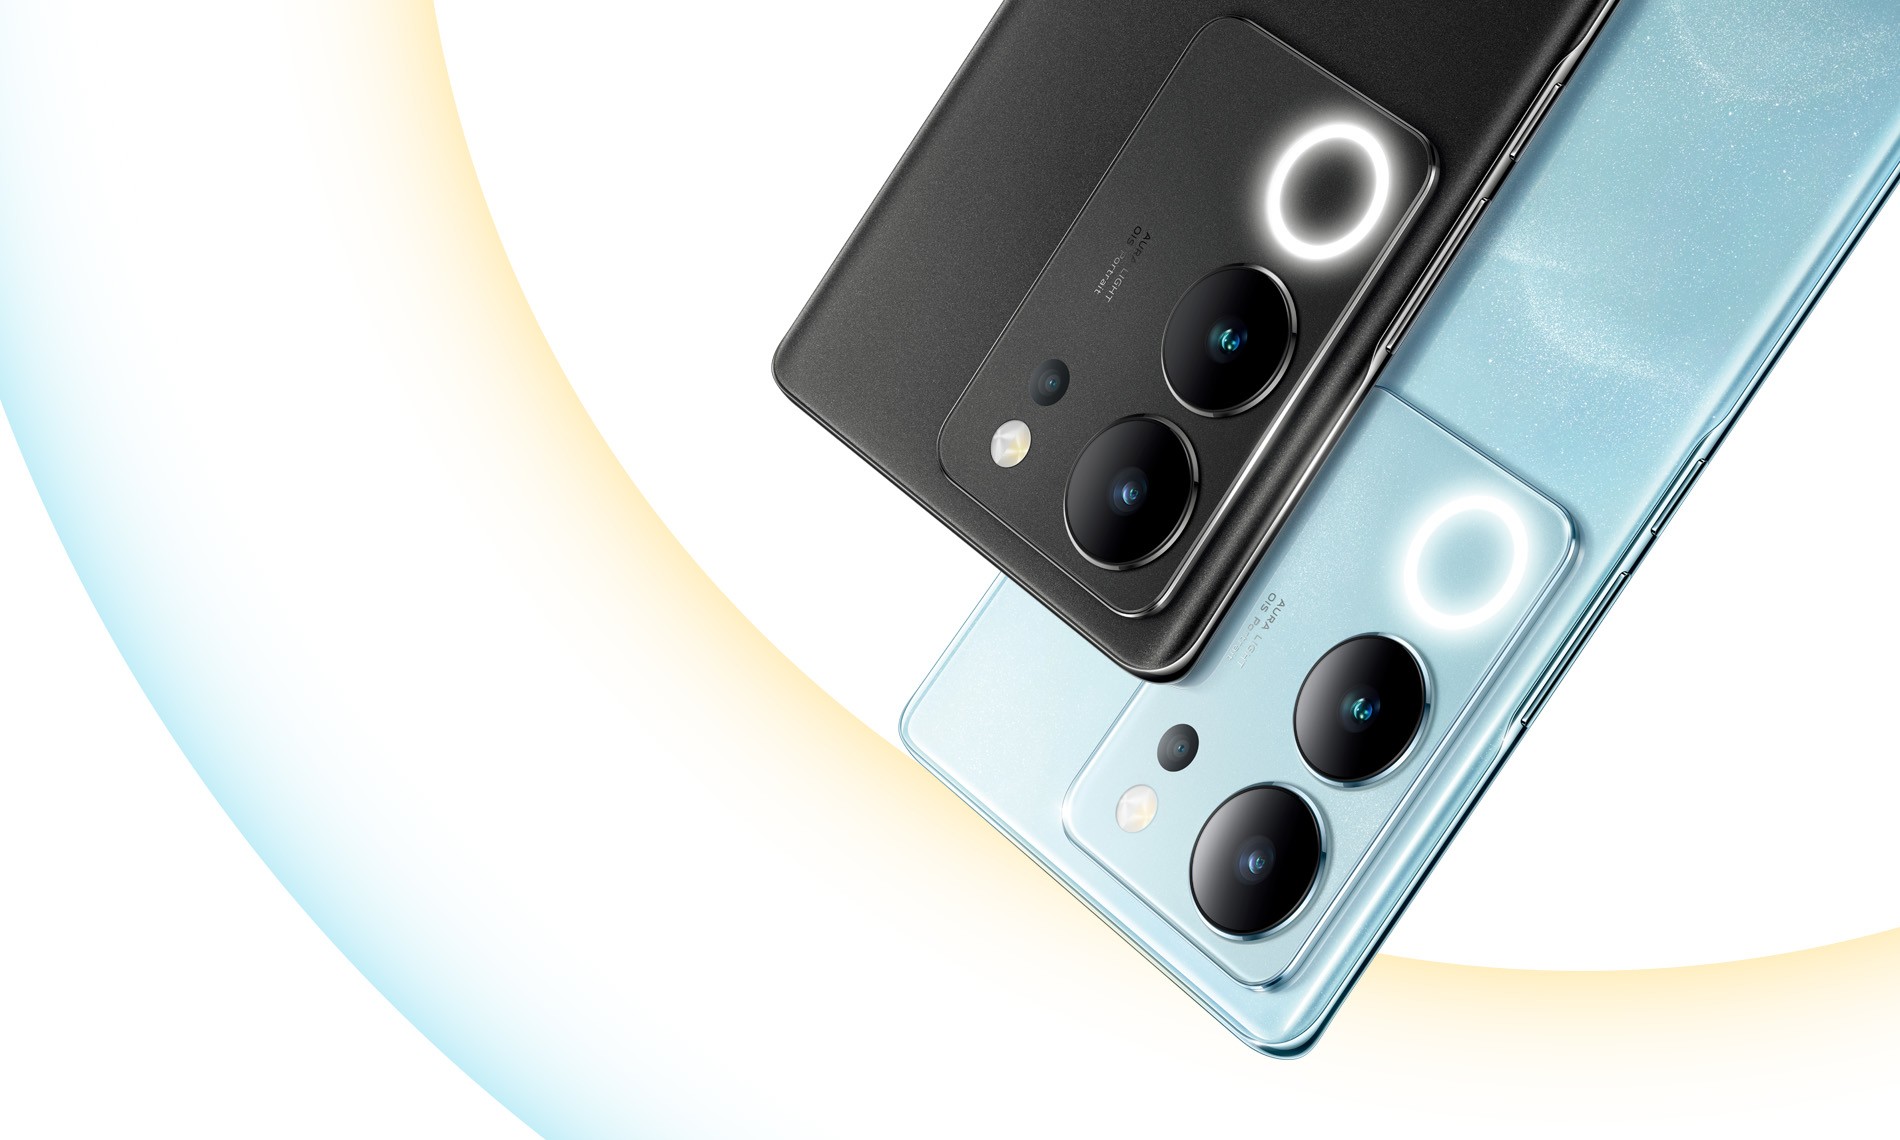 Ra mắt Vivo V29 thiết kế cao cấp, giá tầm trung